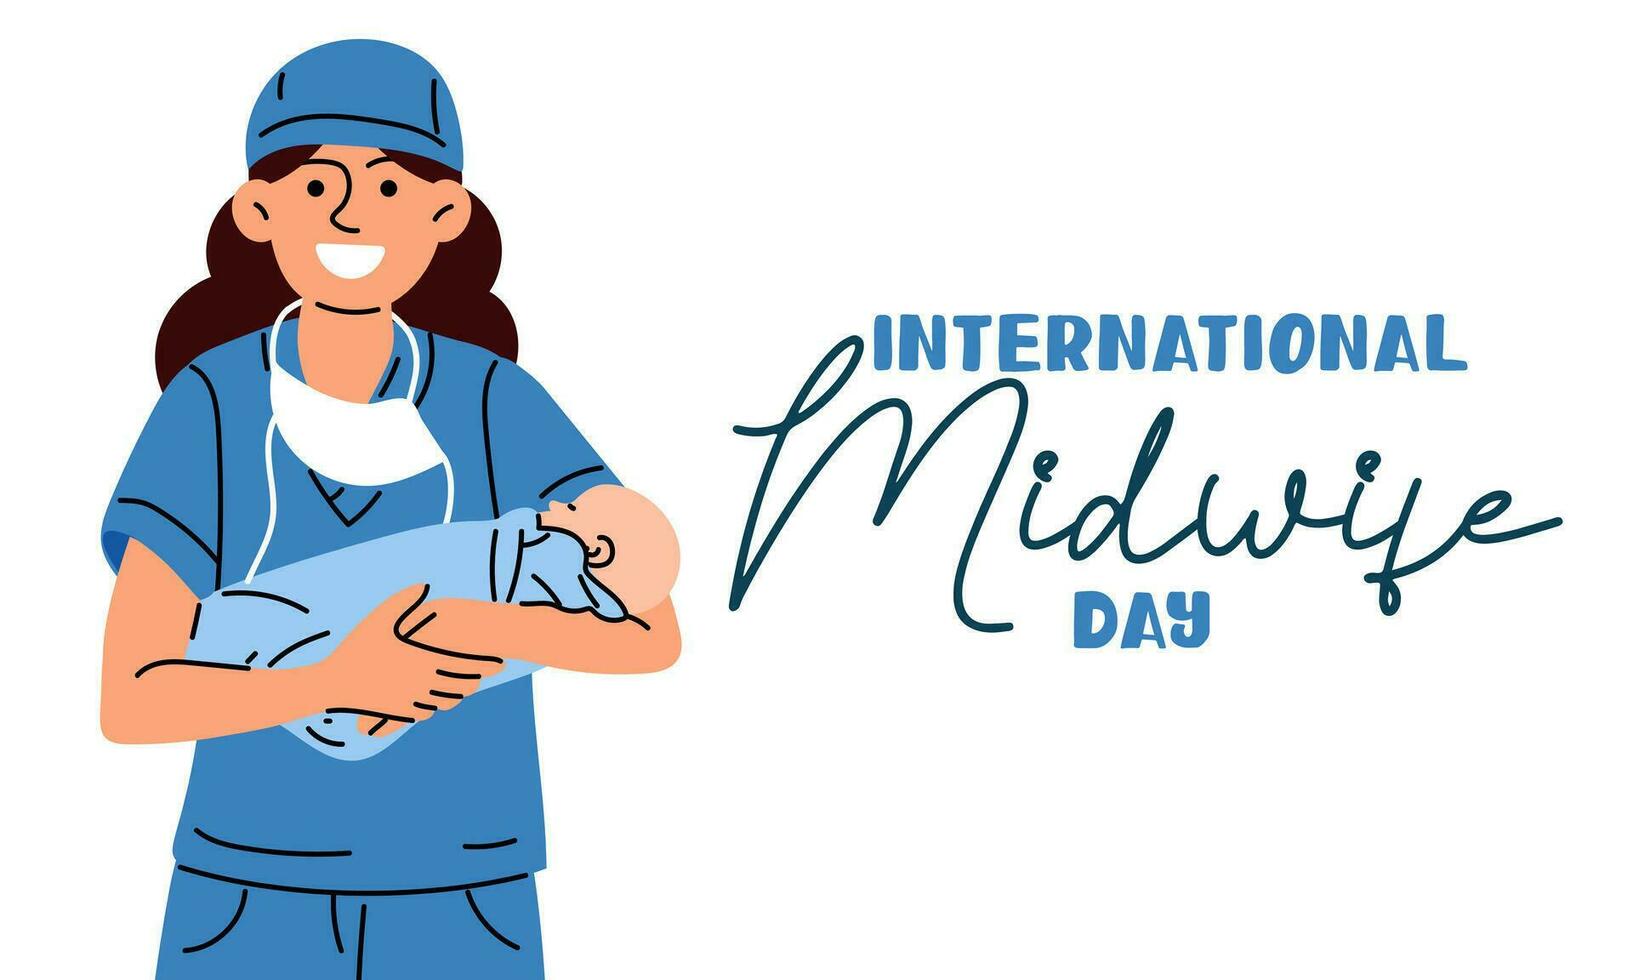 el internacional día de parteras es celebrado anualmente en mayo 5. un Partera es un médico profesional quien se preocupa para madres y recién nacidos durante parto. el enfermero es un Partera con un chico. vector